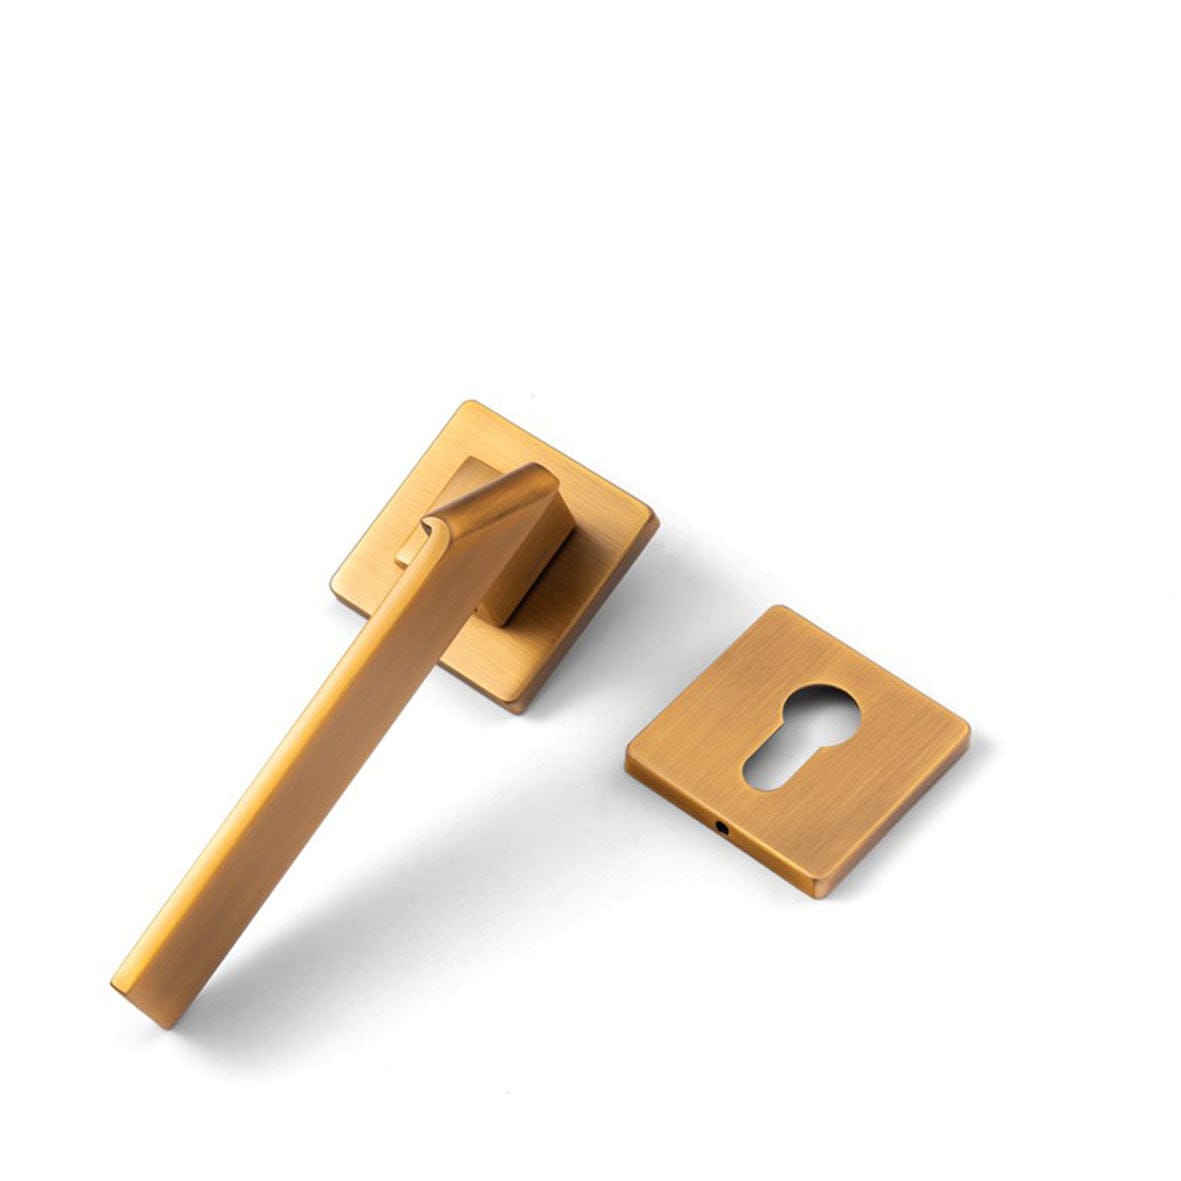 Goo-Ki Yellow Bronze / Fake Lock Square Space Folding Door Lock Minimalist Interior Door Security Mute Door Lock